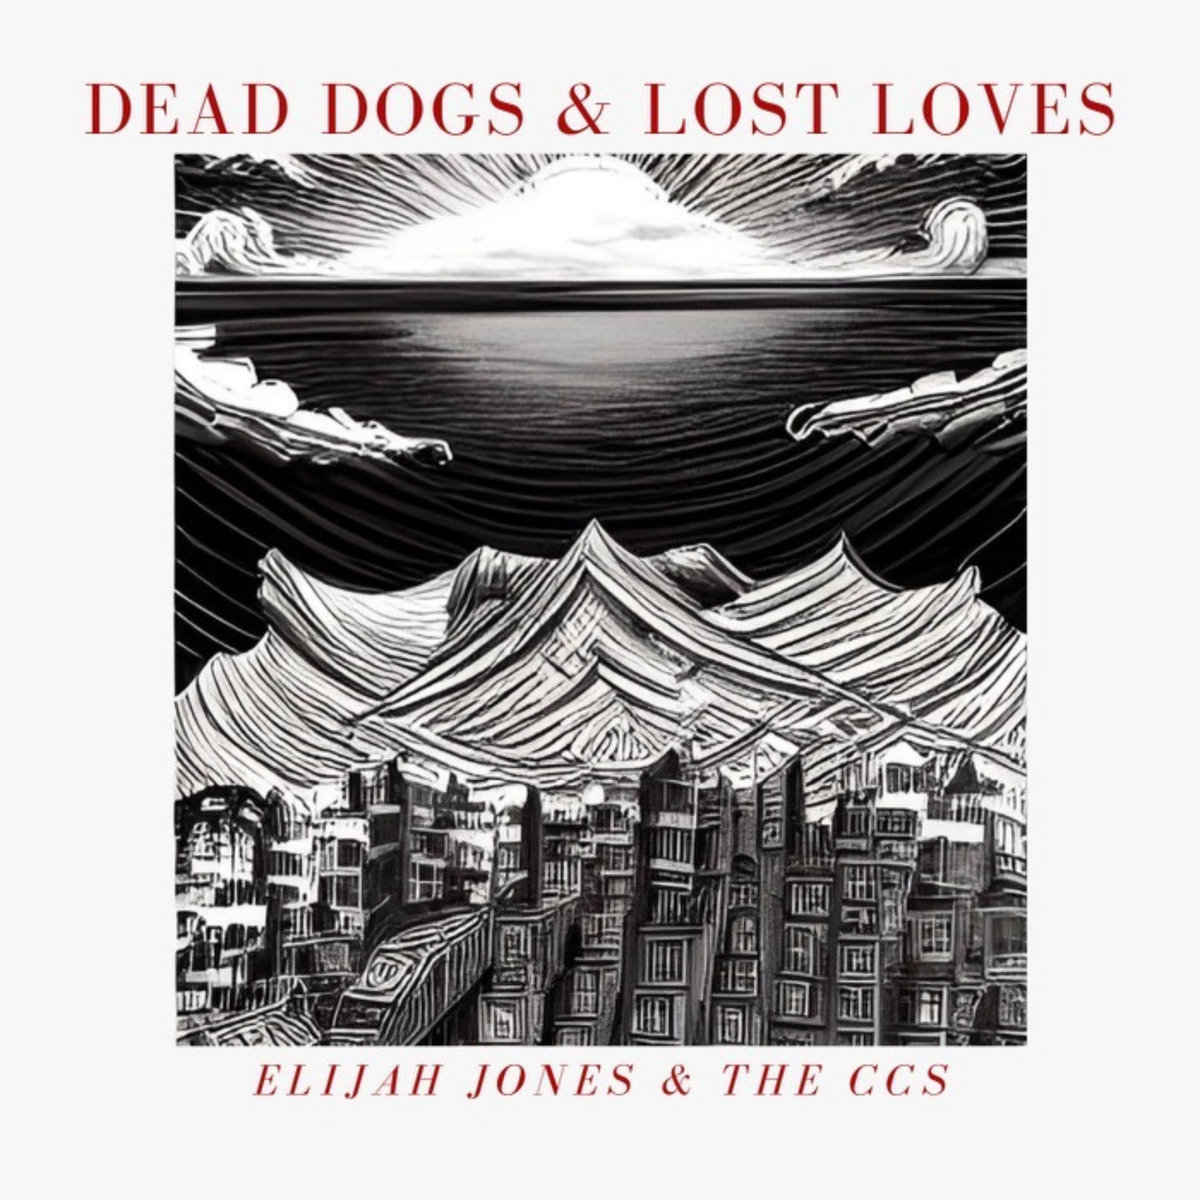 ALBUM REVIEW: Dead Dogs & Lost Loves by Elijah Jones & the CCs